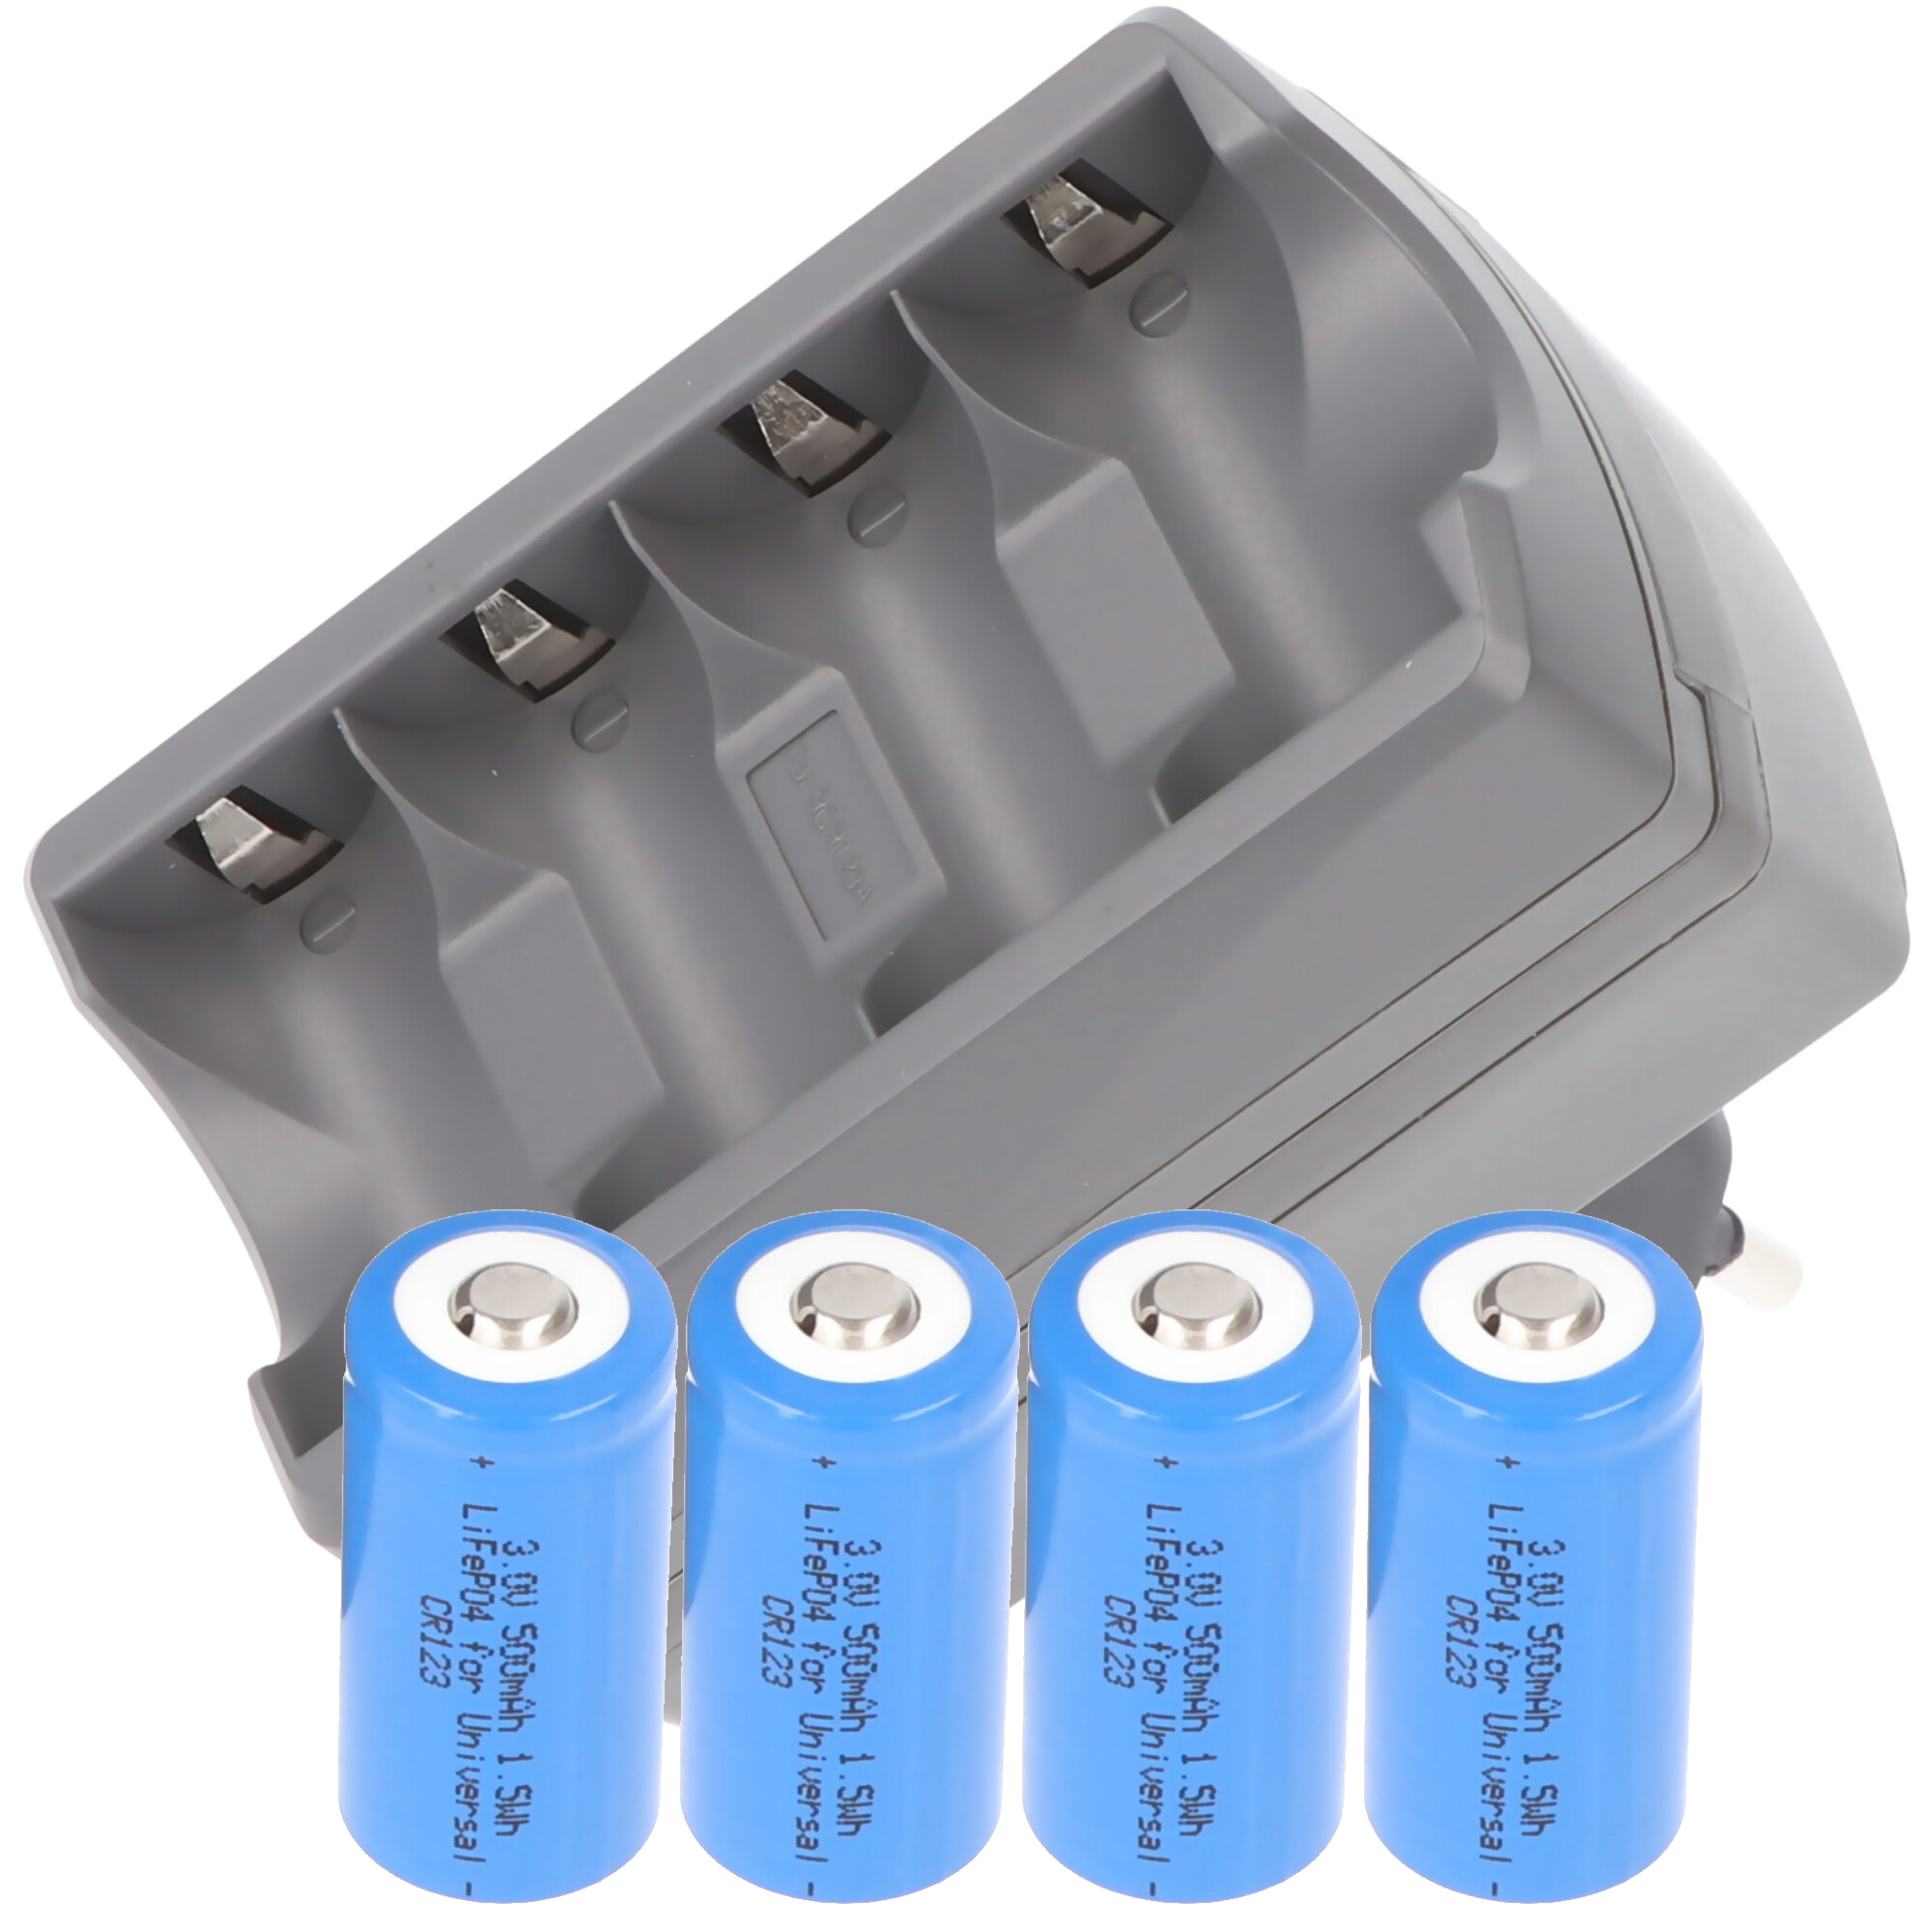 Batterie Li-ion CR123A 2 pièces avec jusqu'à 760 mAh et chargeur USB avec  grand écran, avec courant de charge jusqu'à 0,5 Ah, Chargeurs USB, Chargeurs